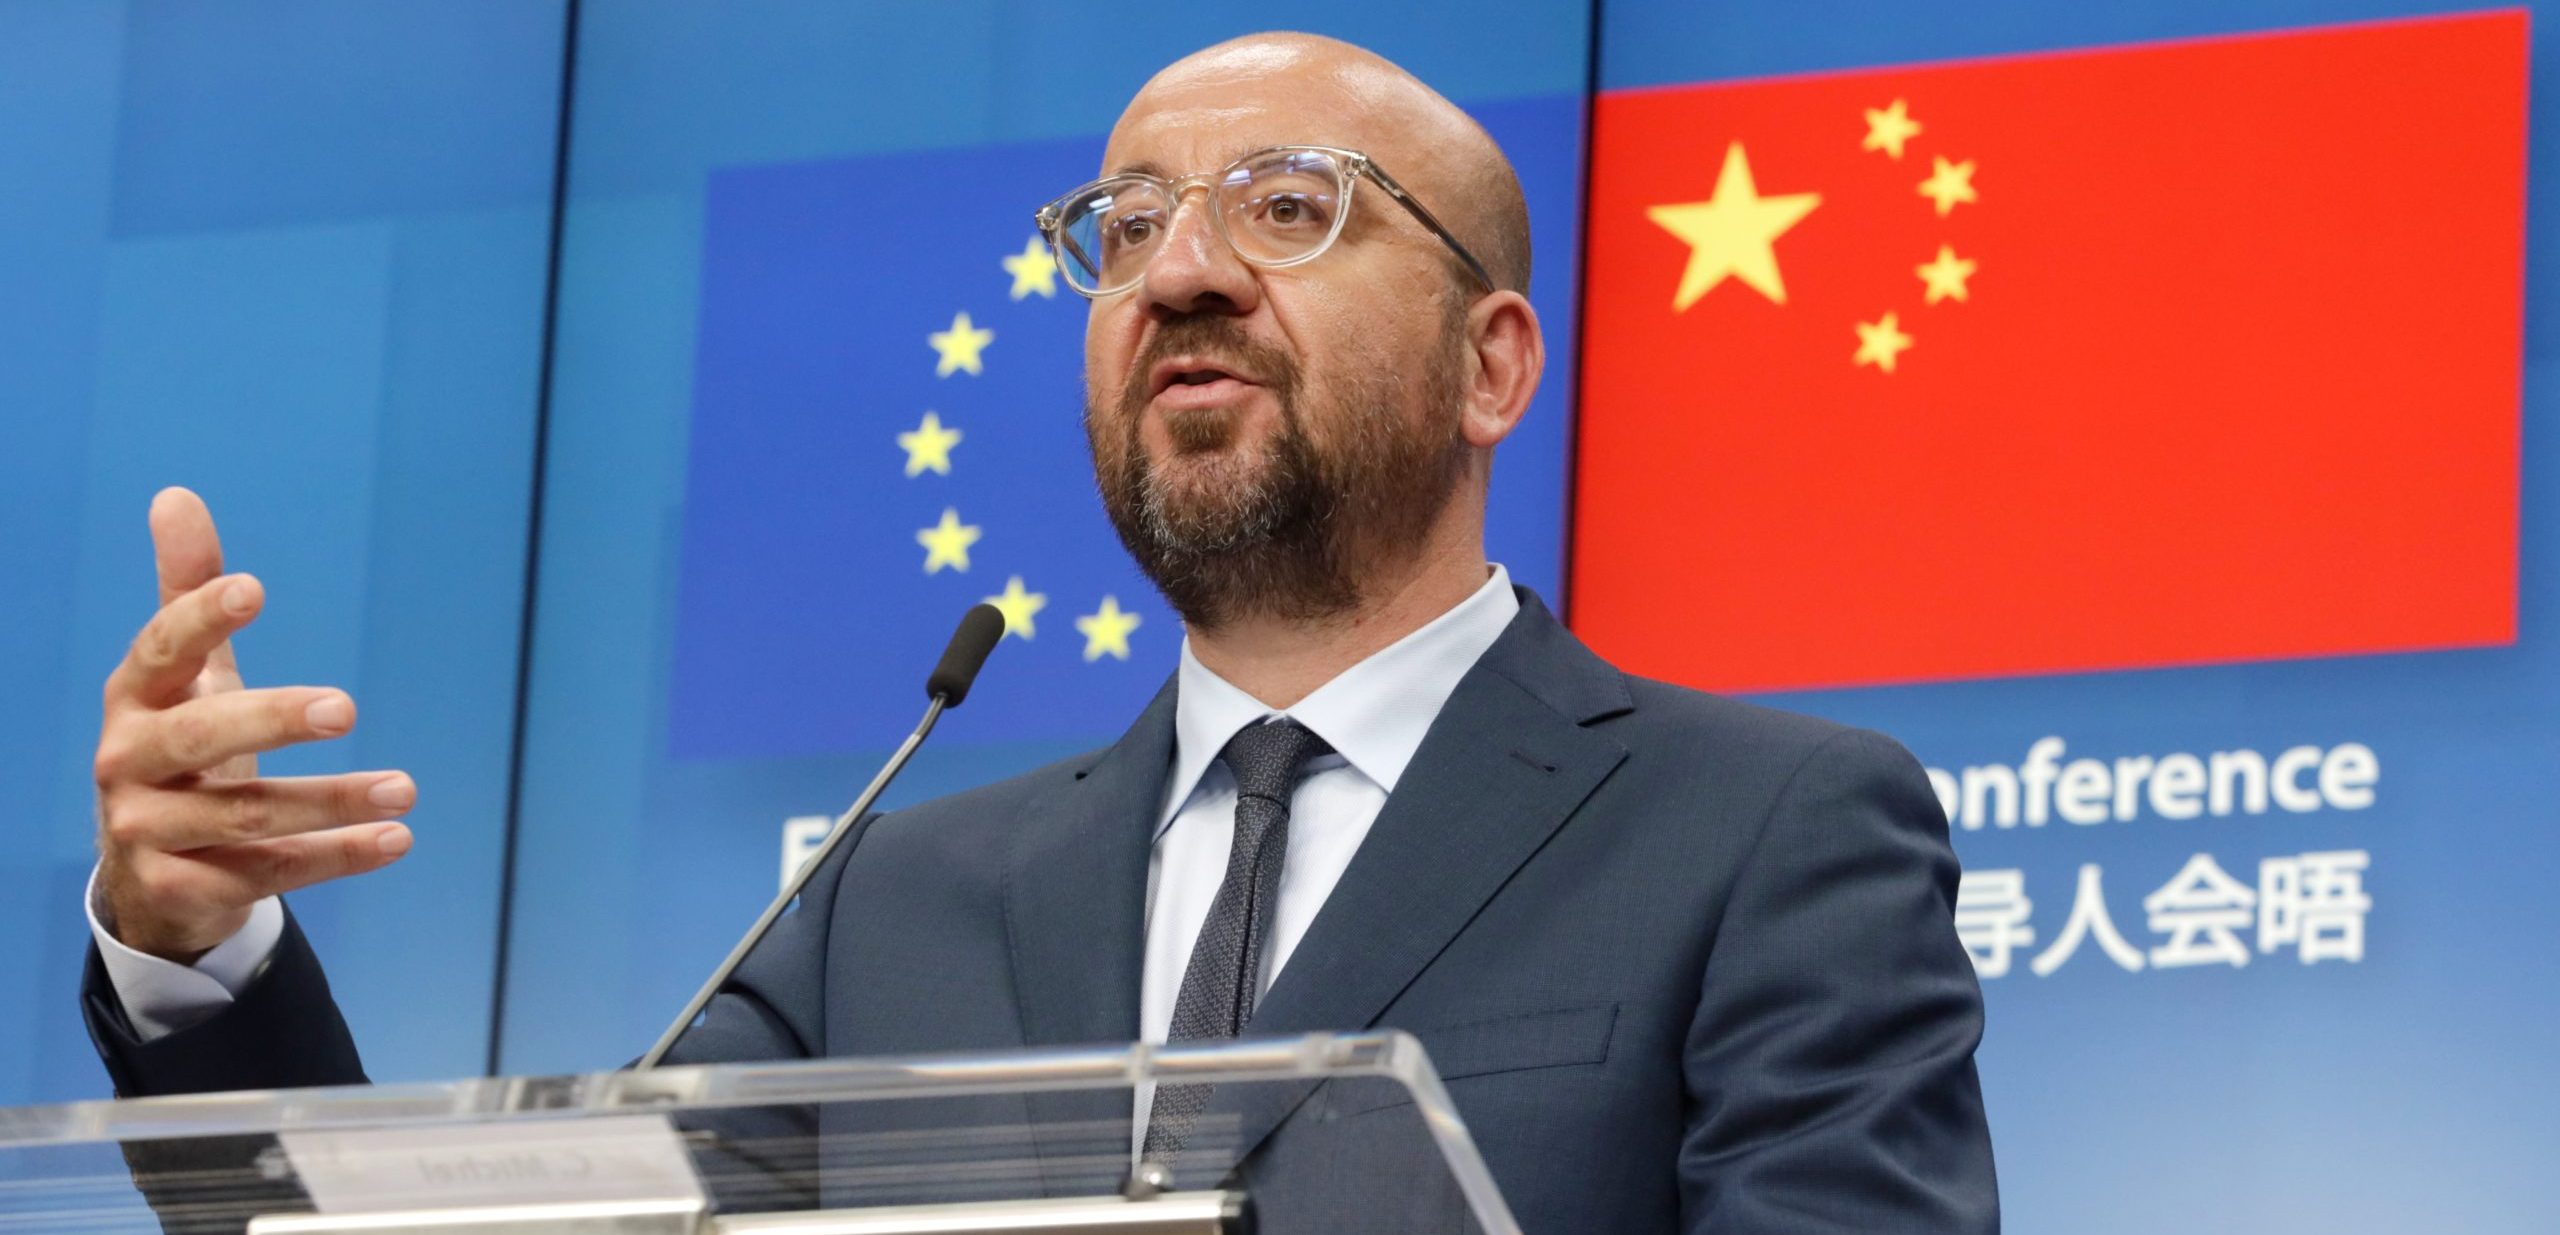 Sr. Charles MICHEL, Presidente del Consejo Europeo durante la Cumbre EU - China el 22 de junio de 2020. (Foto Unión Europea).